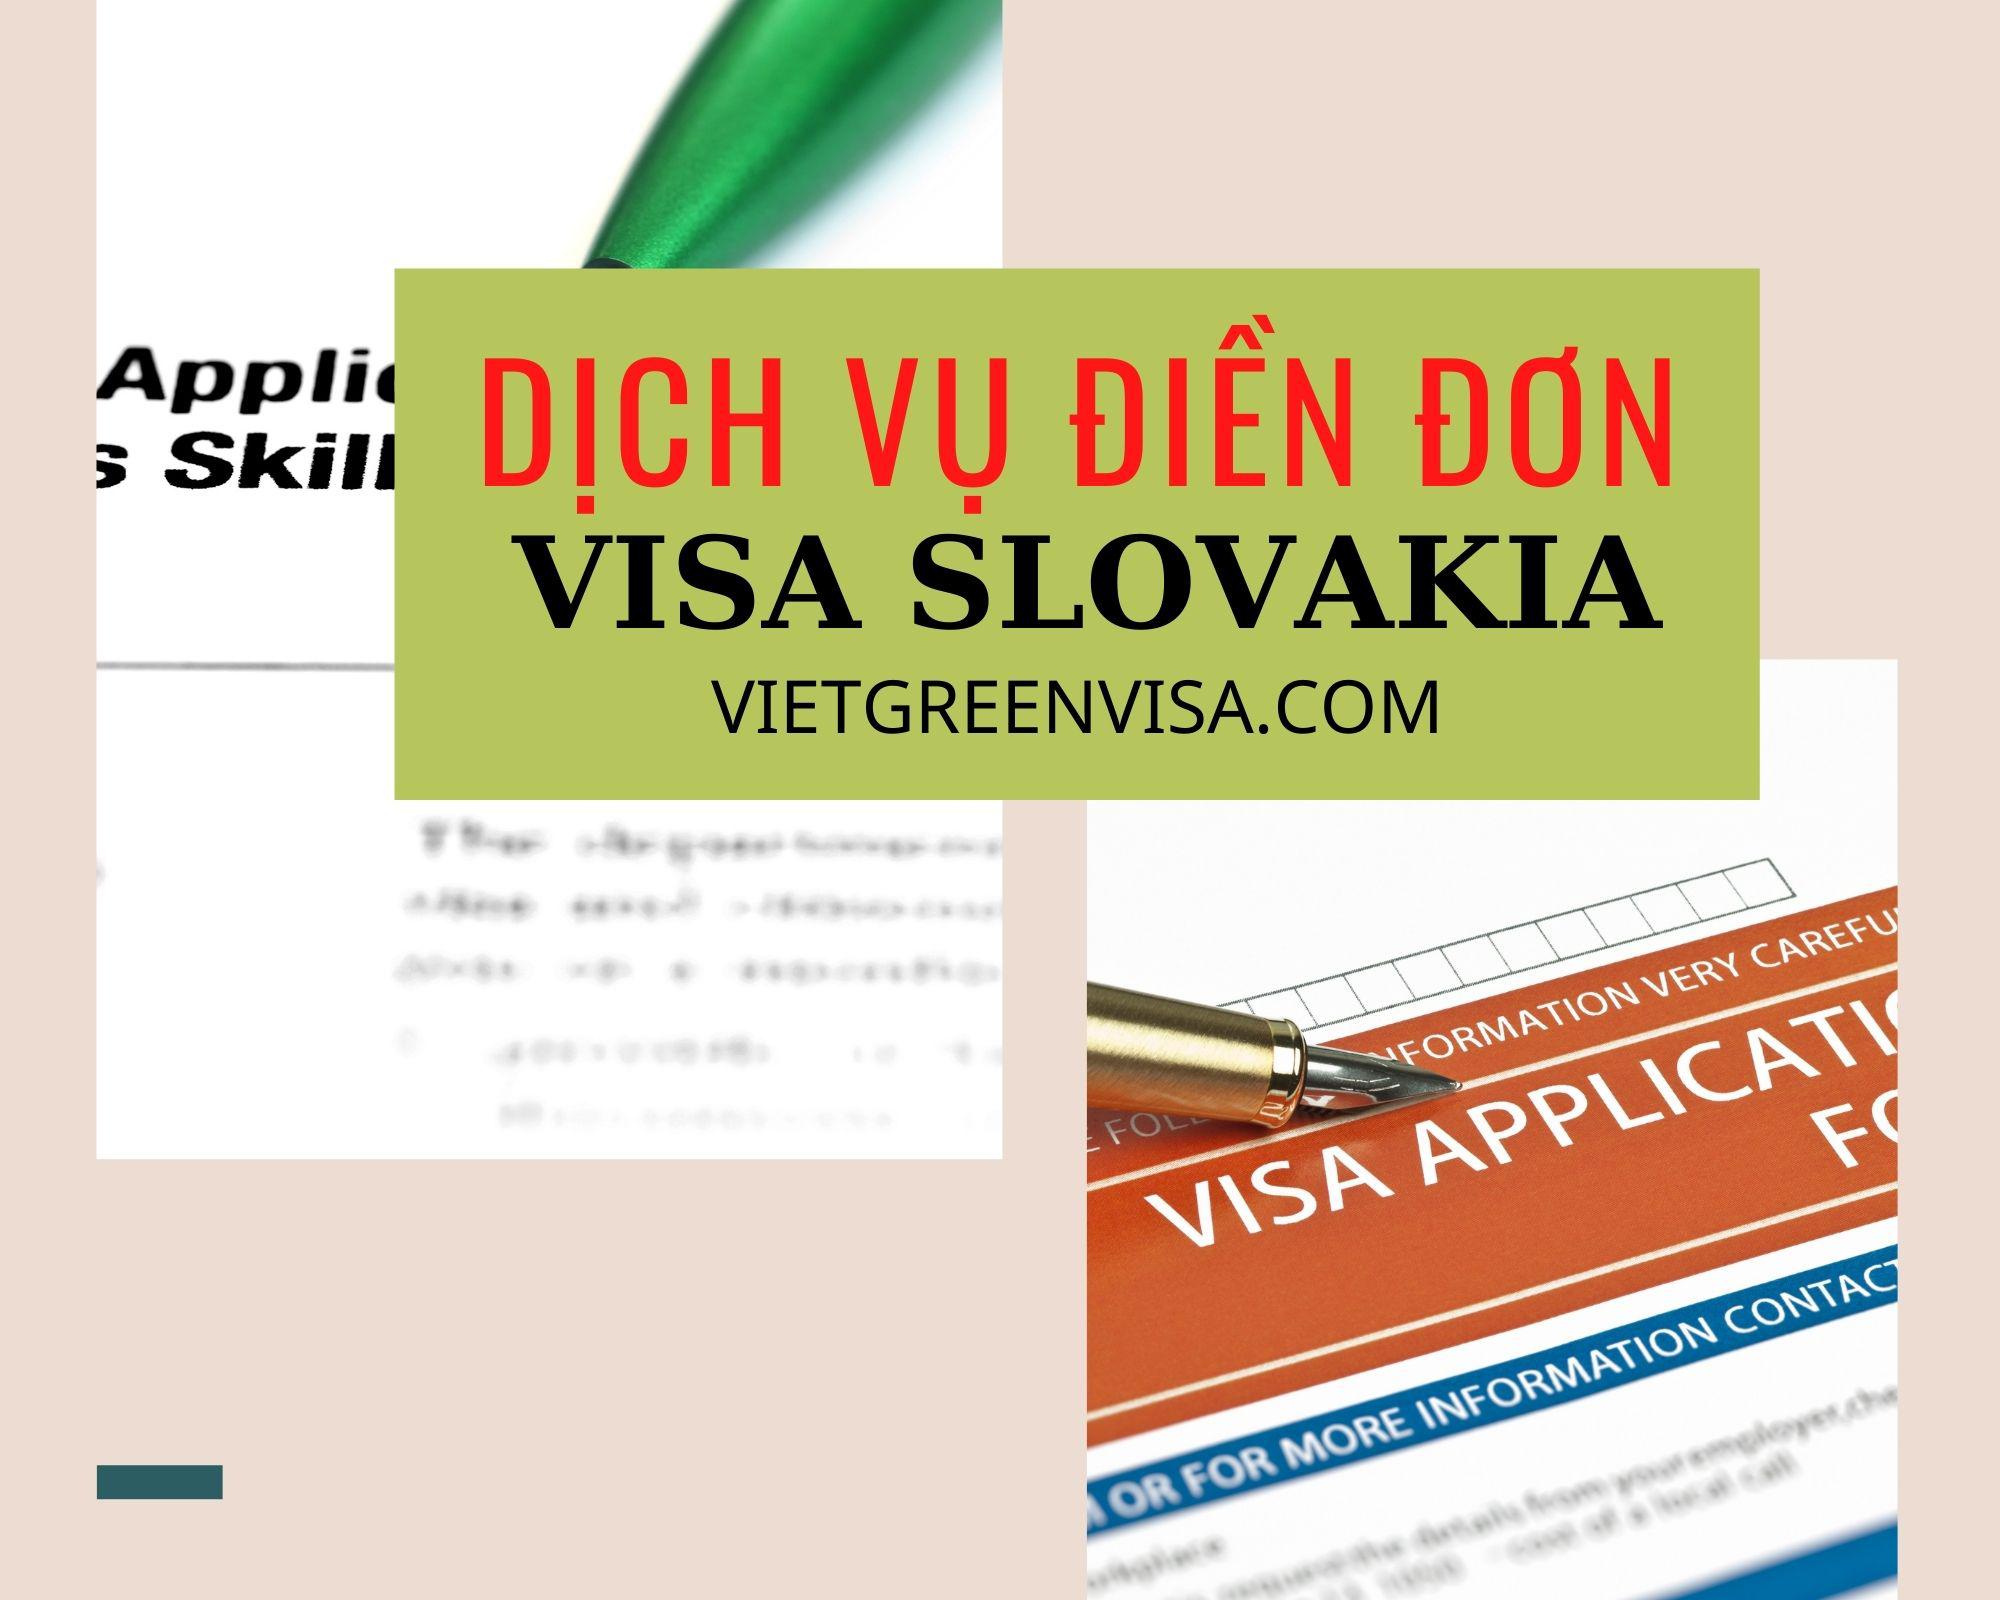 Hỗ trợ điền đơn visa Slovakia online nhanh chóng